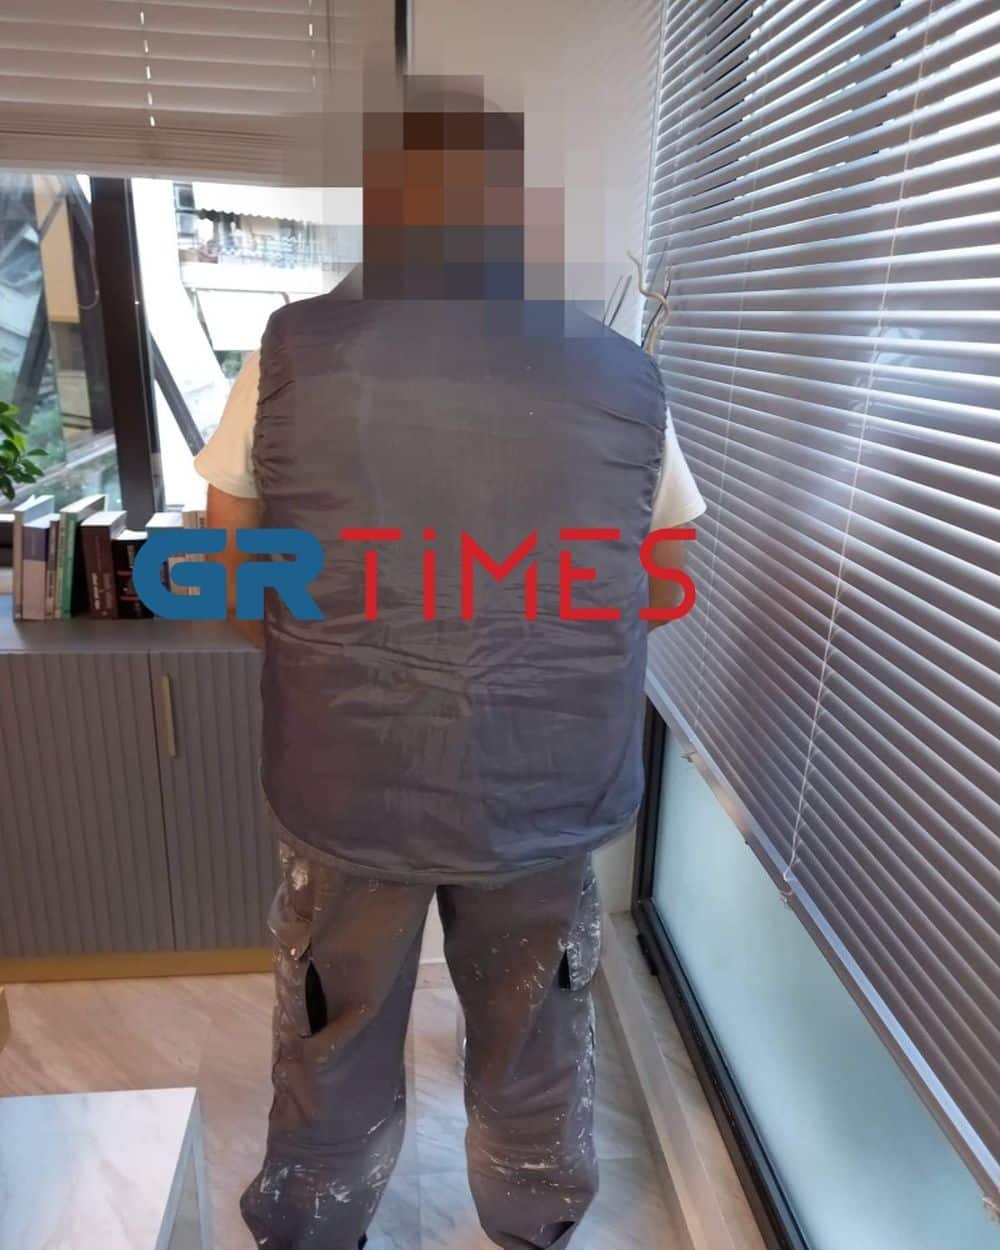 Η πλάτη του 14χρονου που ξυλοκοπήθηκε στη Θεσσαλονίκη